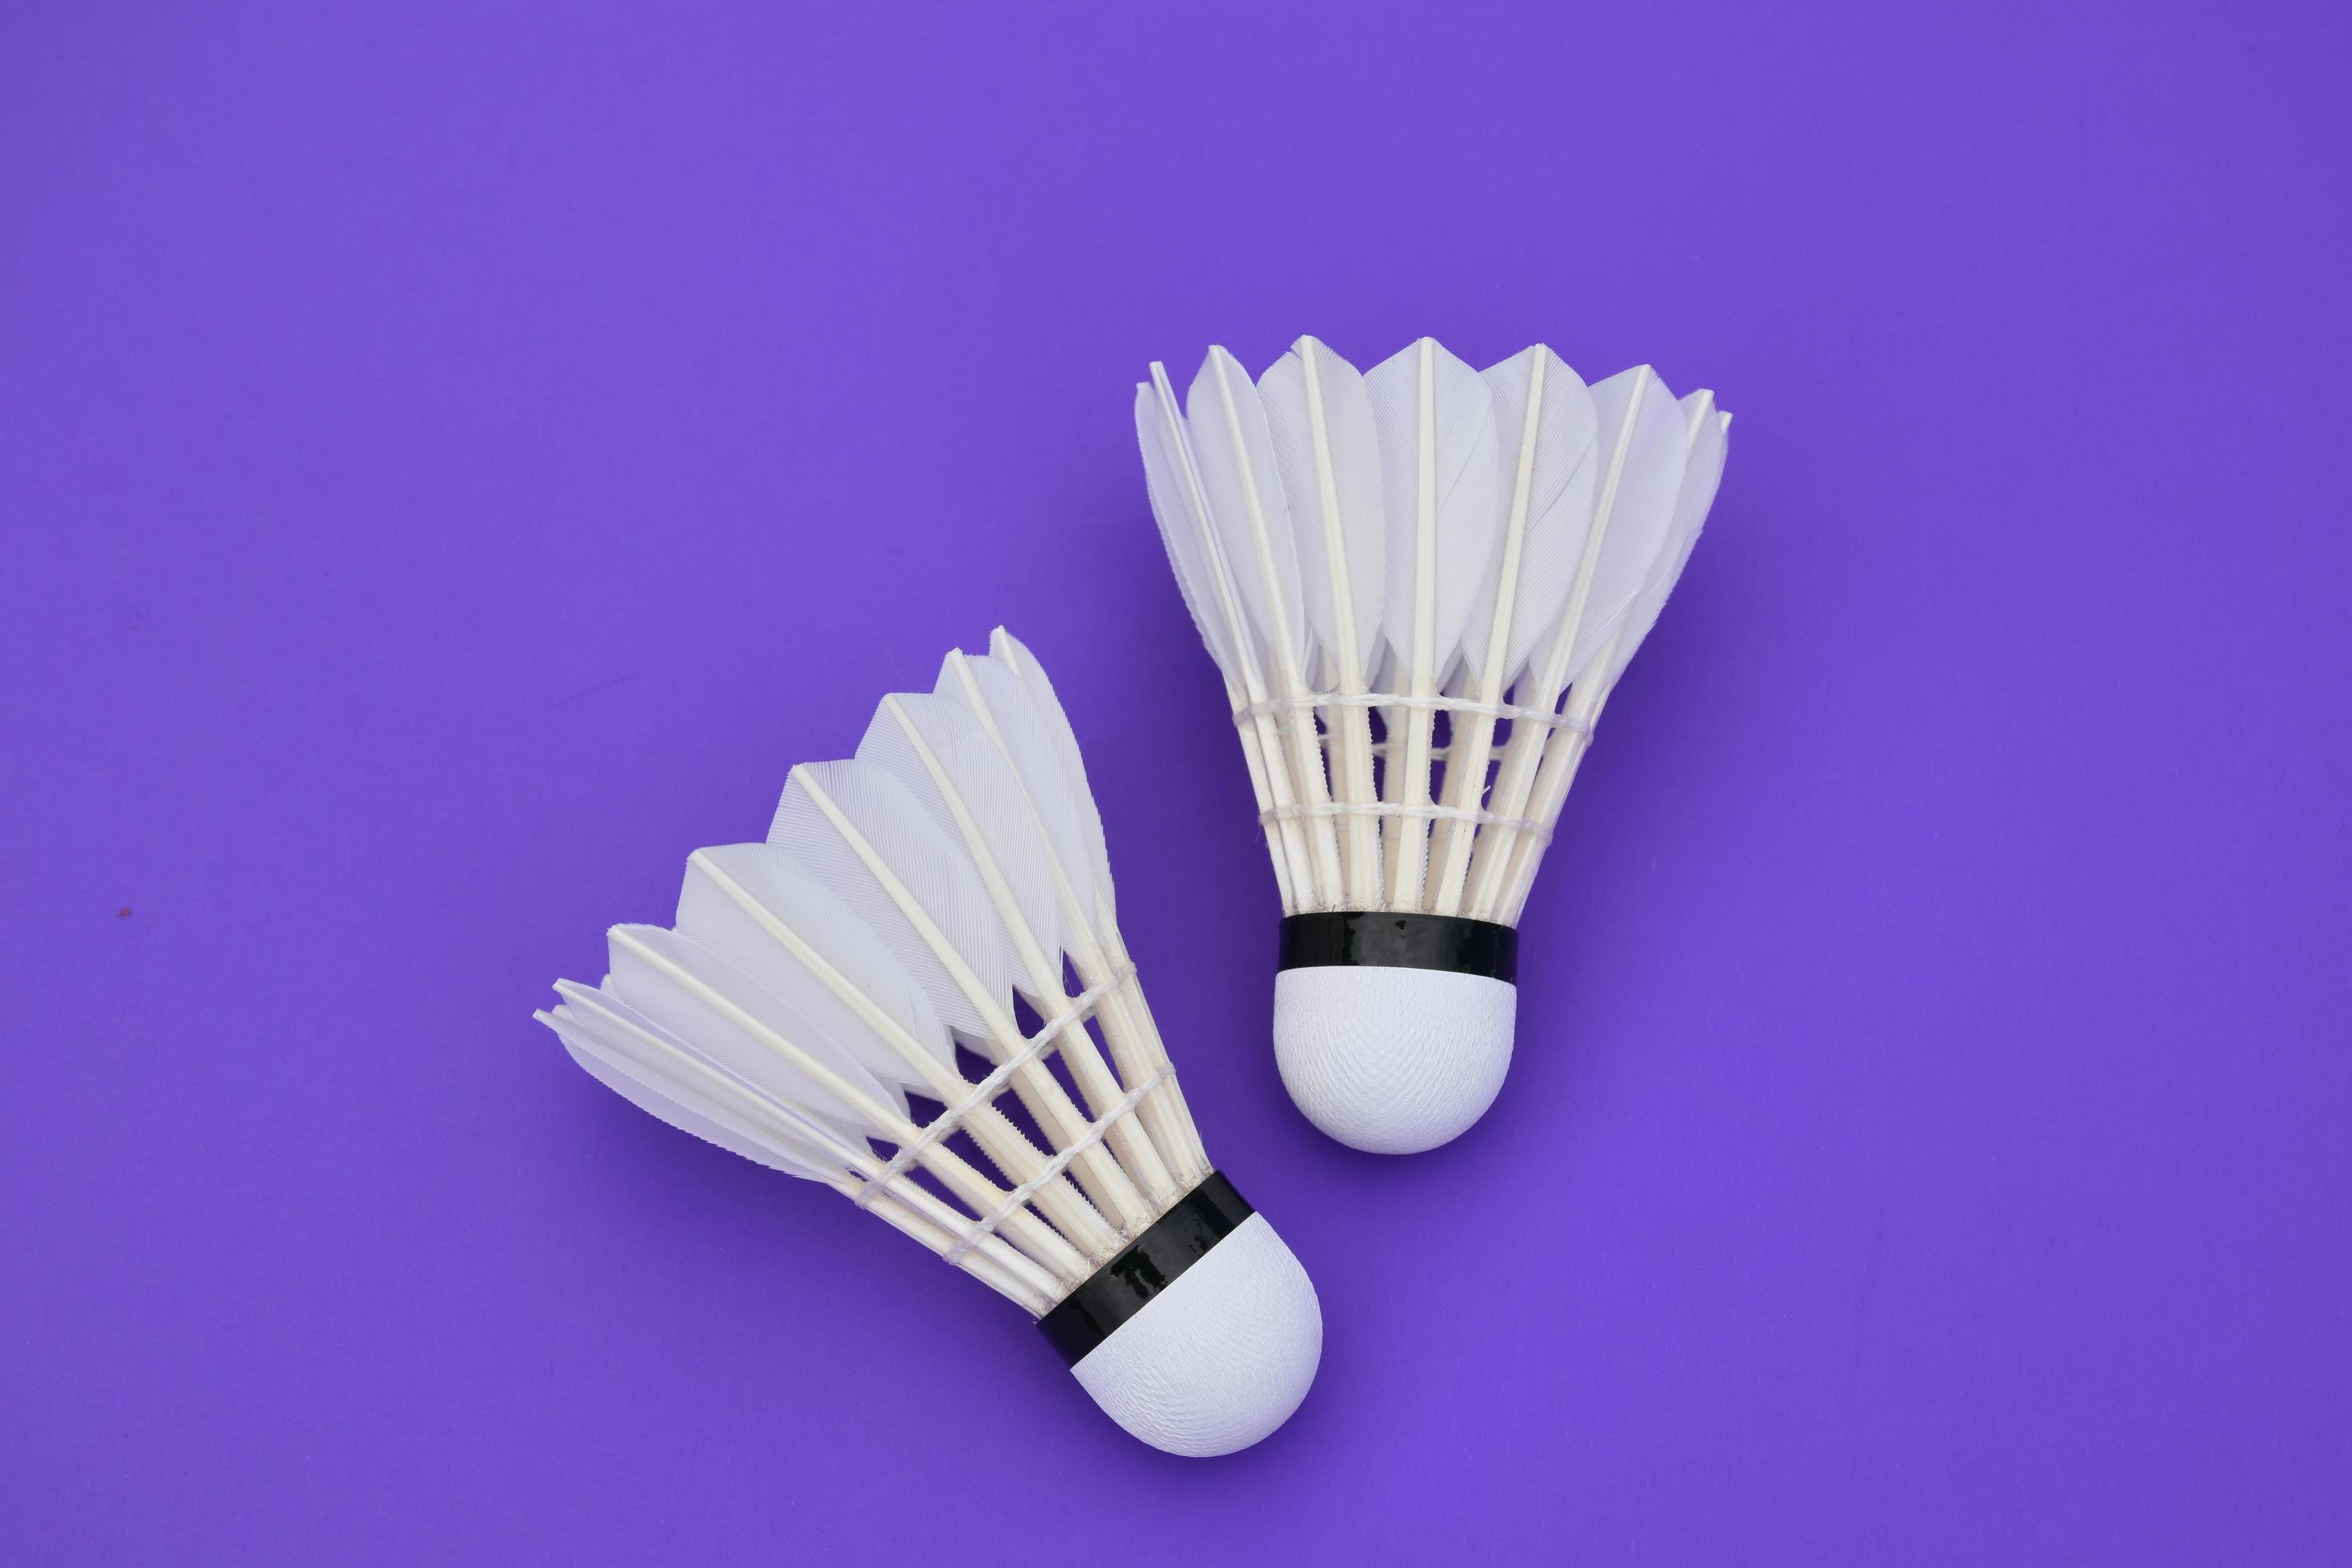 https://static.vecteezy.com/ti/photos-gratuite/p2/8925788-isole-blanc-creme-badminton-volant-plume-pour-jouer-sport-badminton-gratuit-photo.JPG